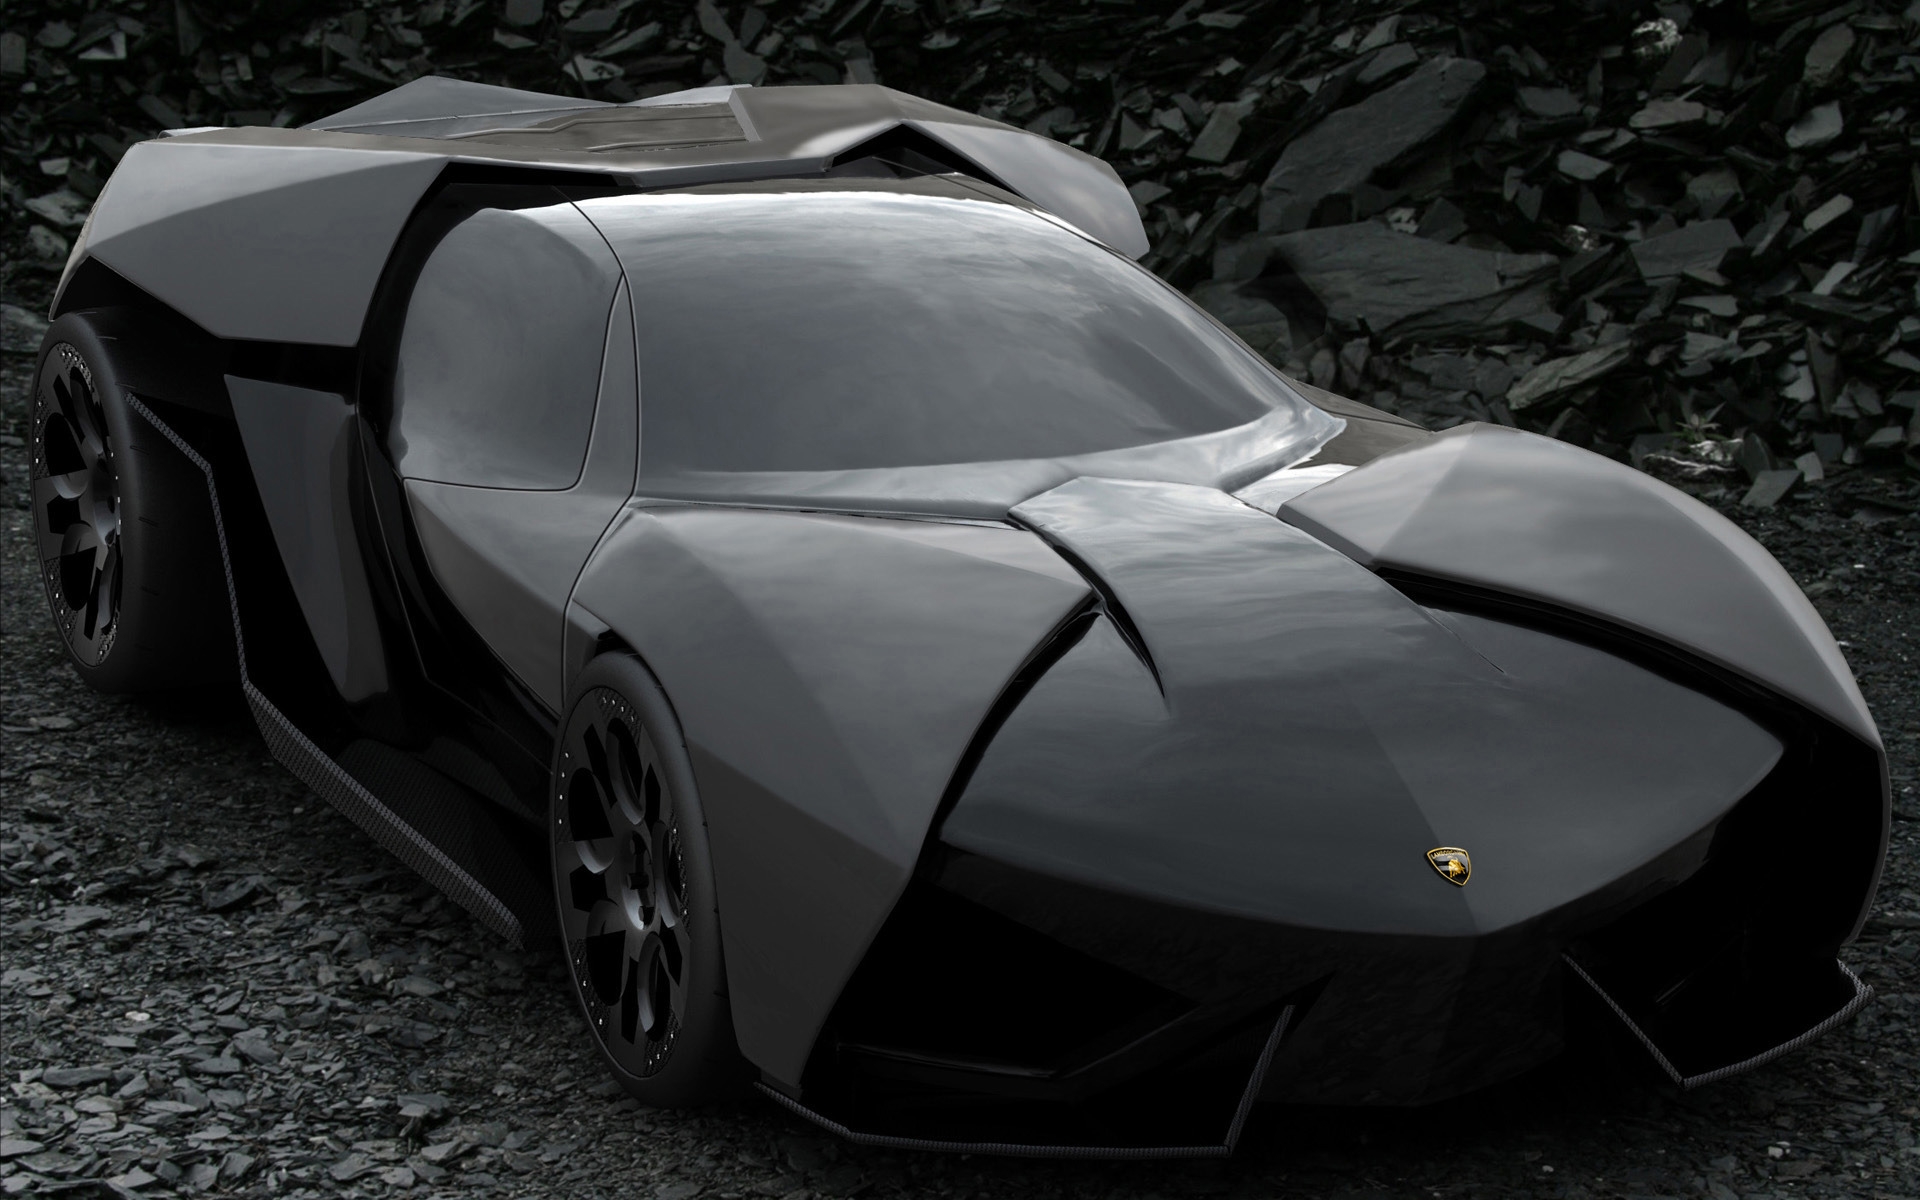 Lamborghini Ankonian Concept for 1920 x 1200 widescreen resolution